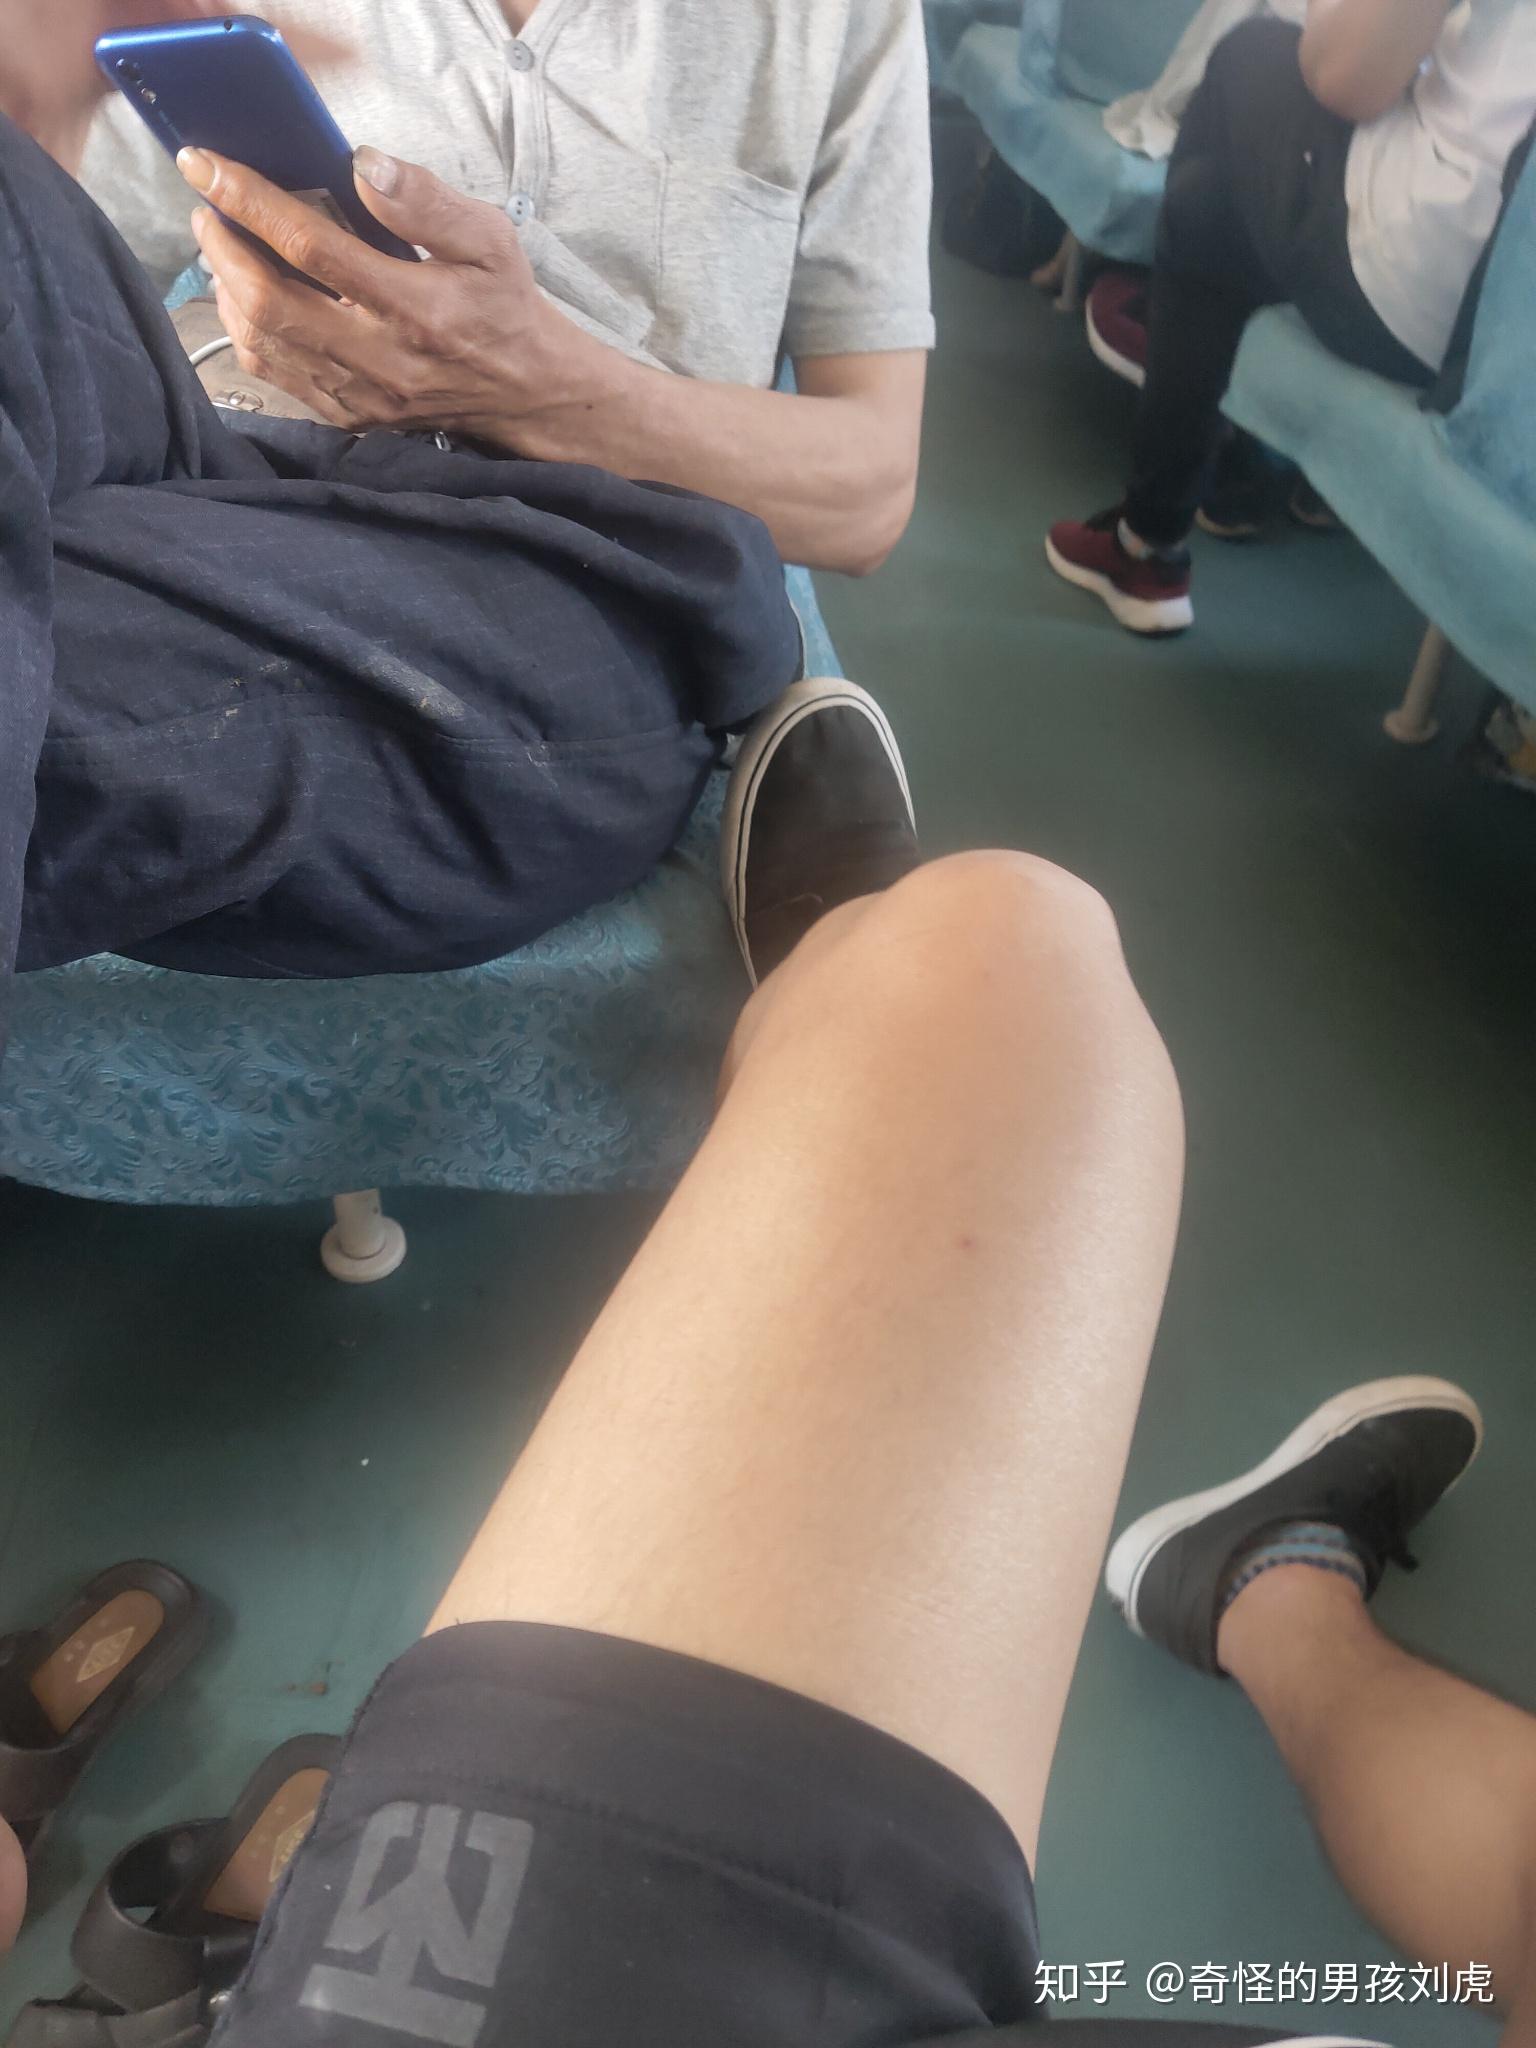 怎么看待在火车上脱鞋的人?